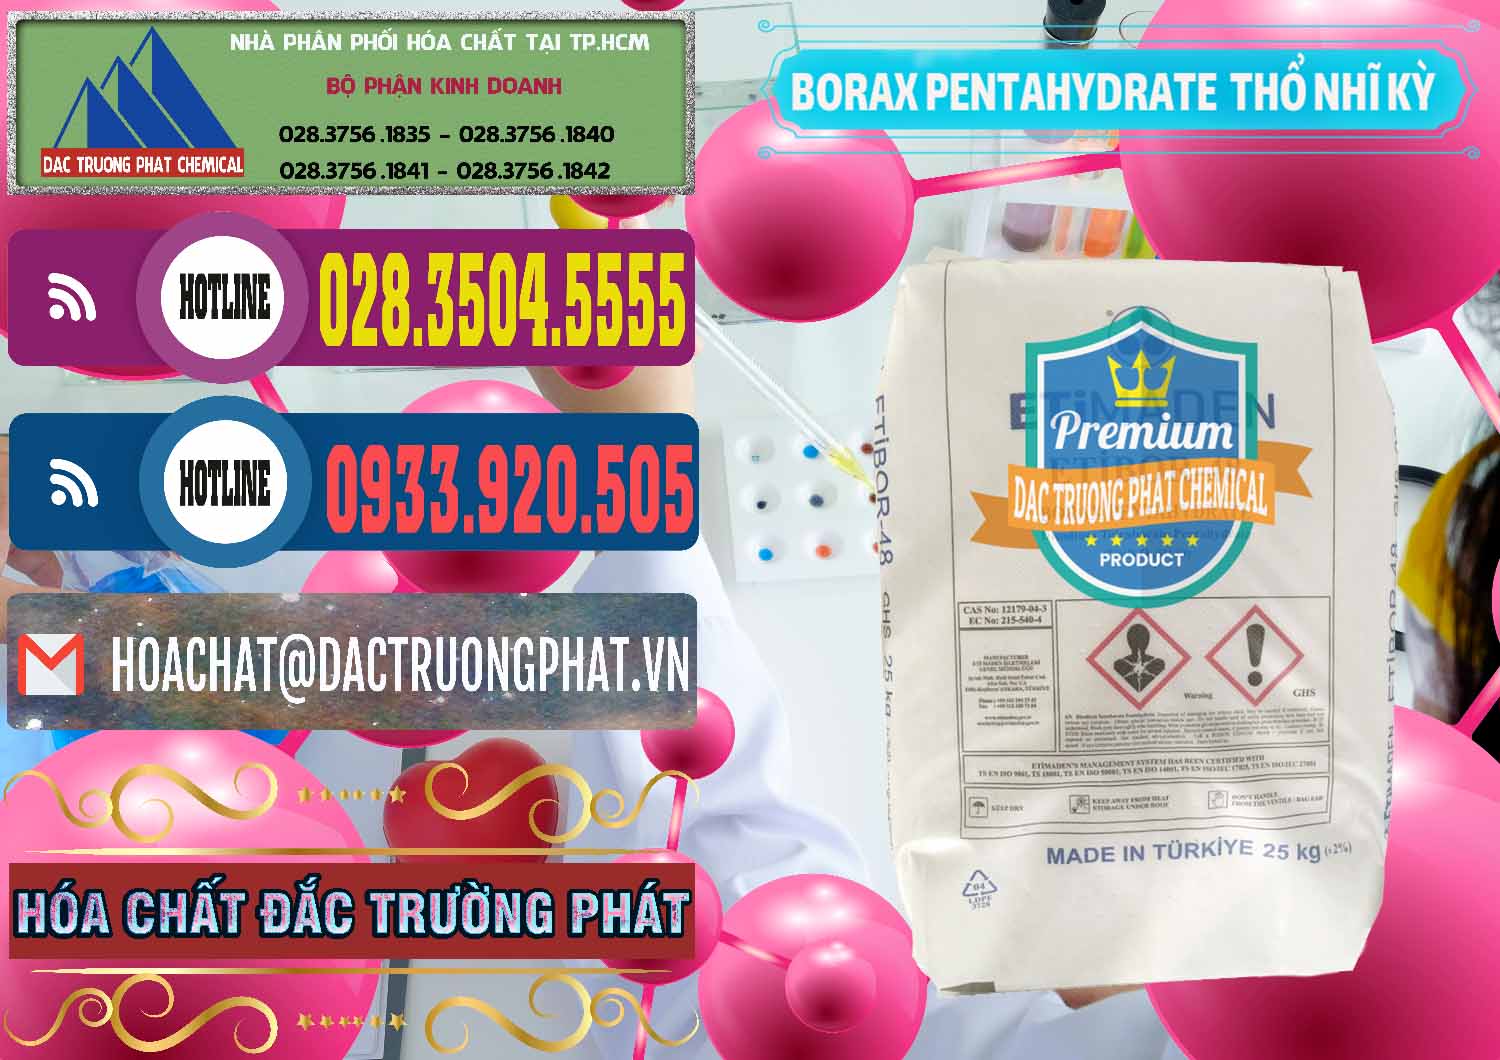 Bán _ cung cấp Borax Pentahydrate Thổ Nhĩ Kỳ Turkey - 0431 - Công ty chuyên cung ứng - phân phối hóa chất tại TP.HCM - muabanhoachat.com.vn